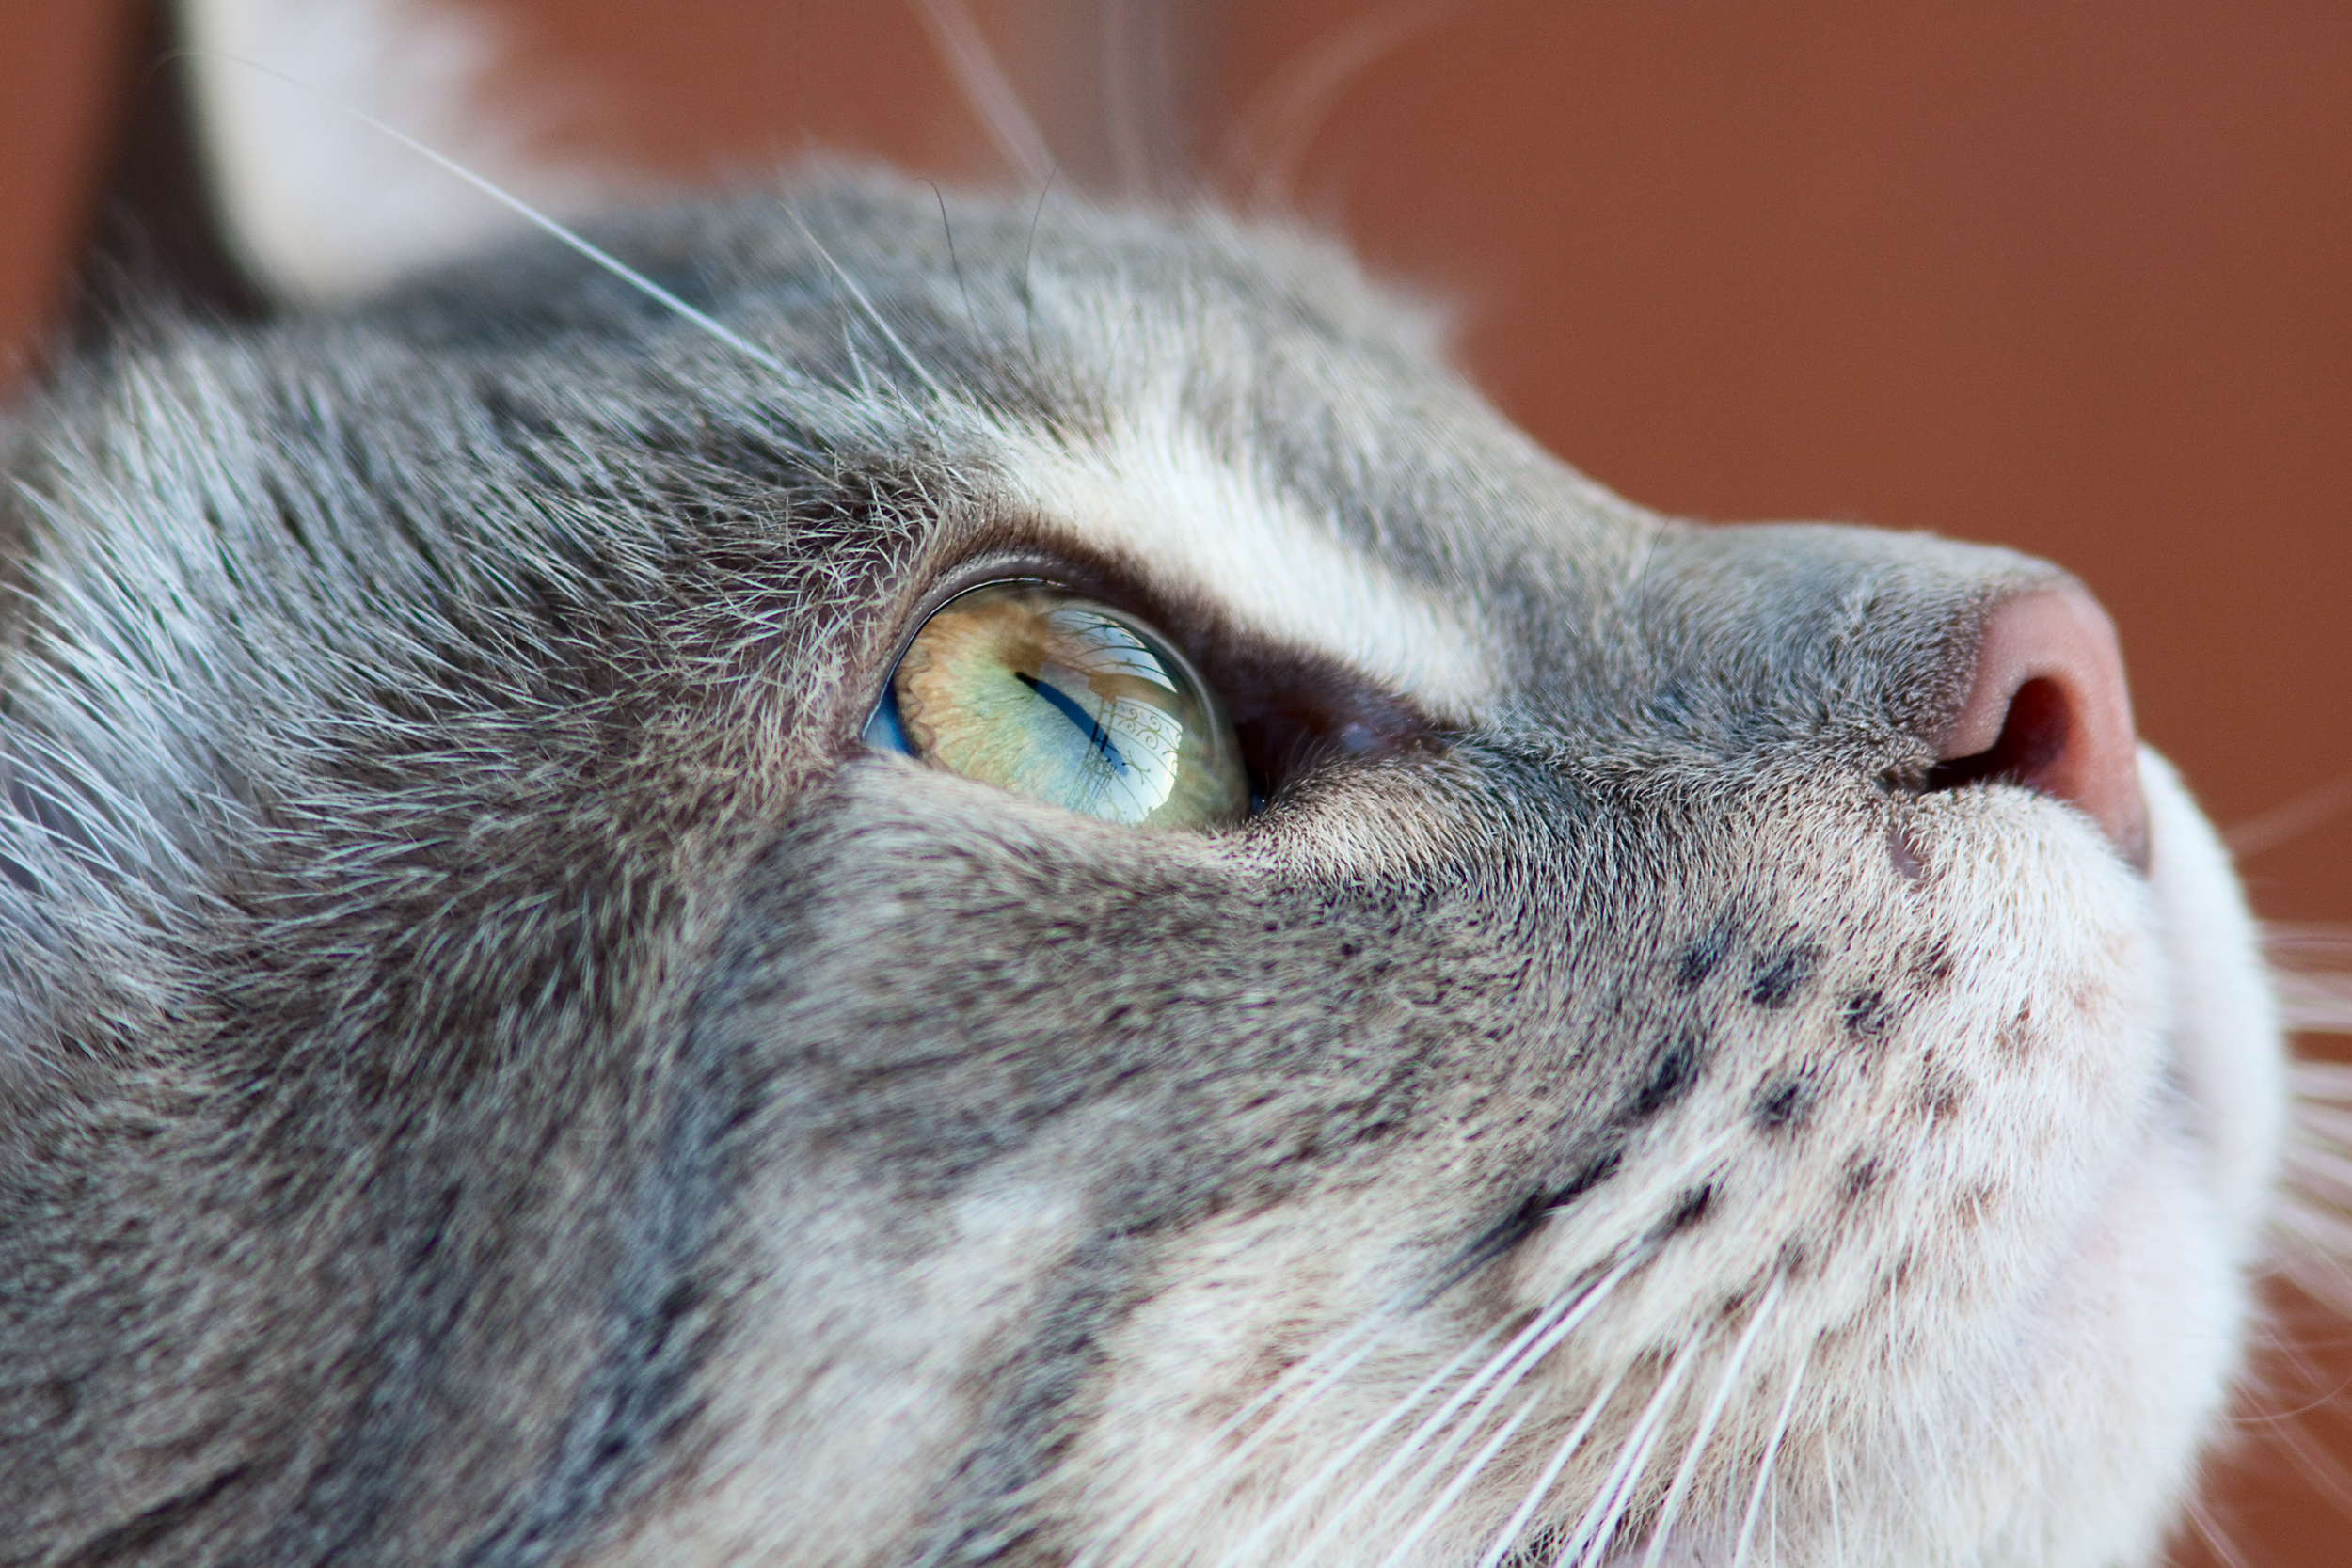 フリー画像 動物写真 哺乳類 ネコ科 猫 ネコ 見上げる フリー素材 画像素材なら 無料 フリー写真素材のフリーフォト